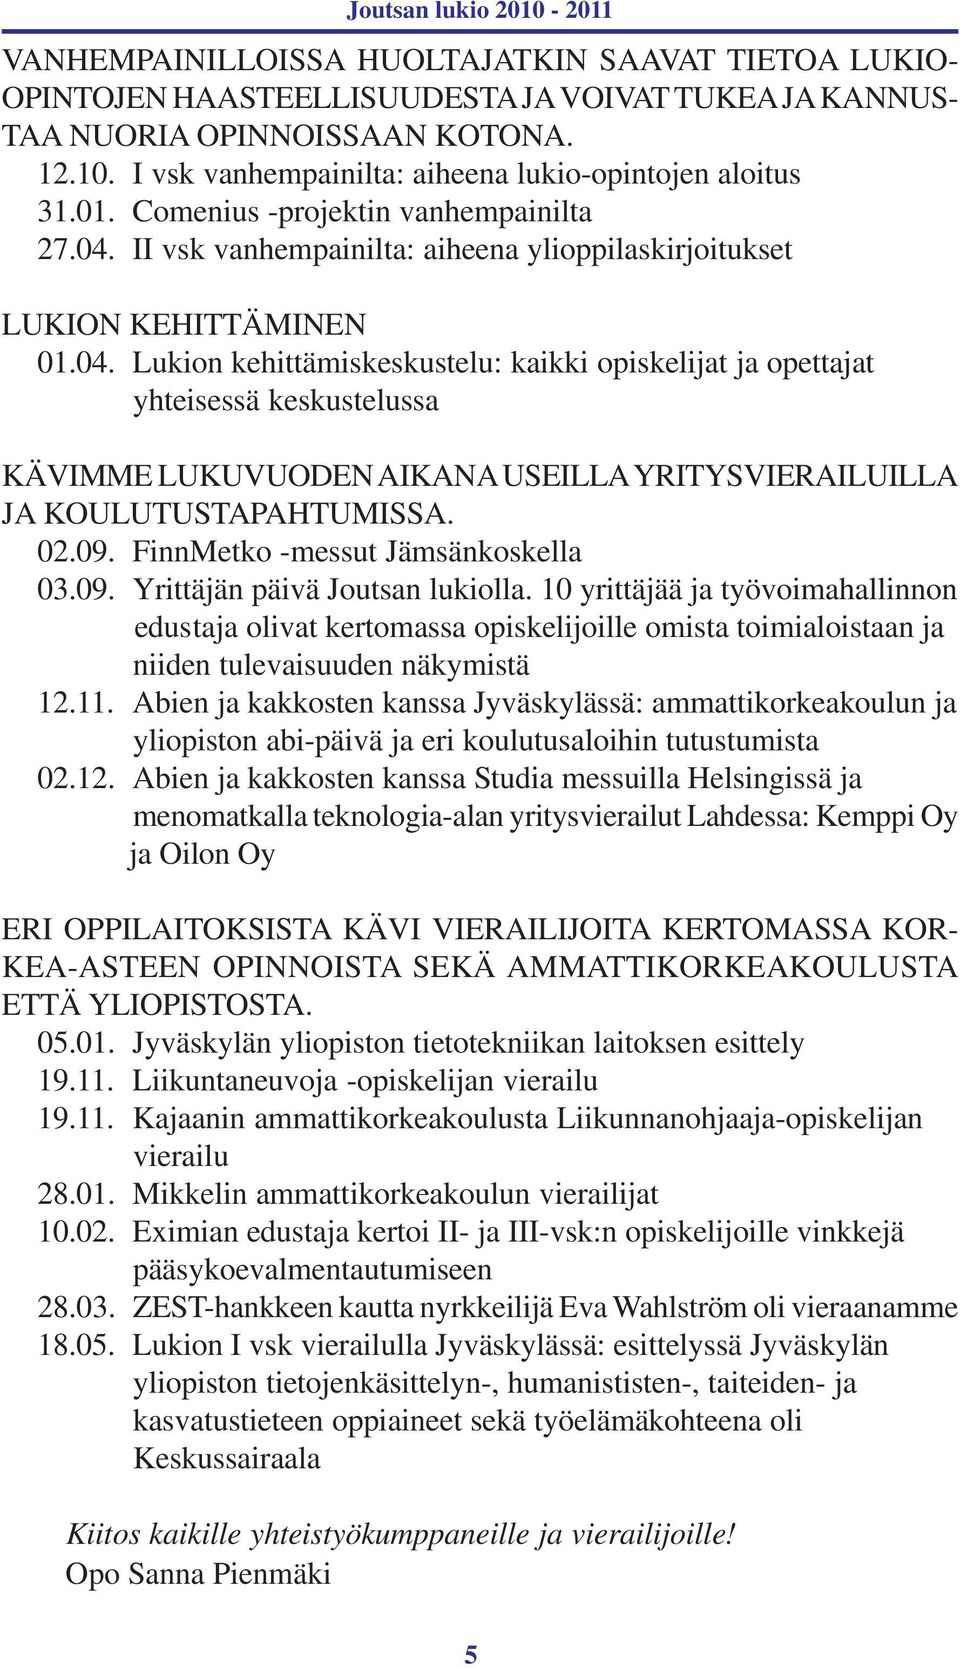 II vsk vanhempainilta: aiheena ylioppilaskirjoitukset LUKION KEHITTÄMINEN 01.04.